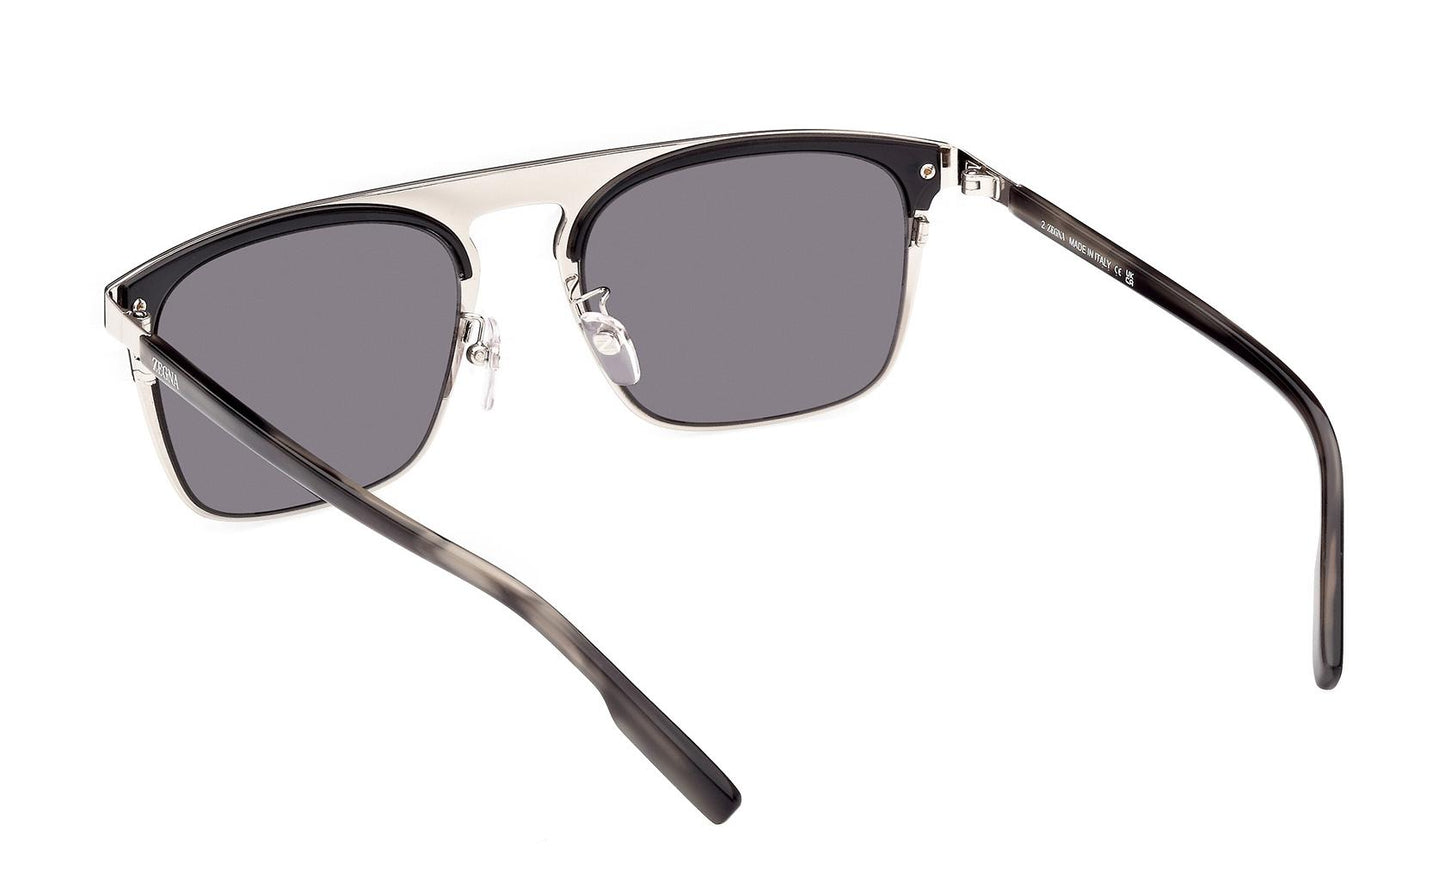 Zegna Sunglasses EZ0216/H 20A